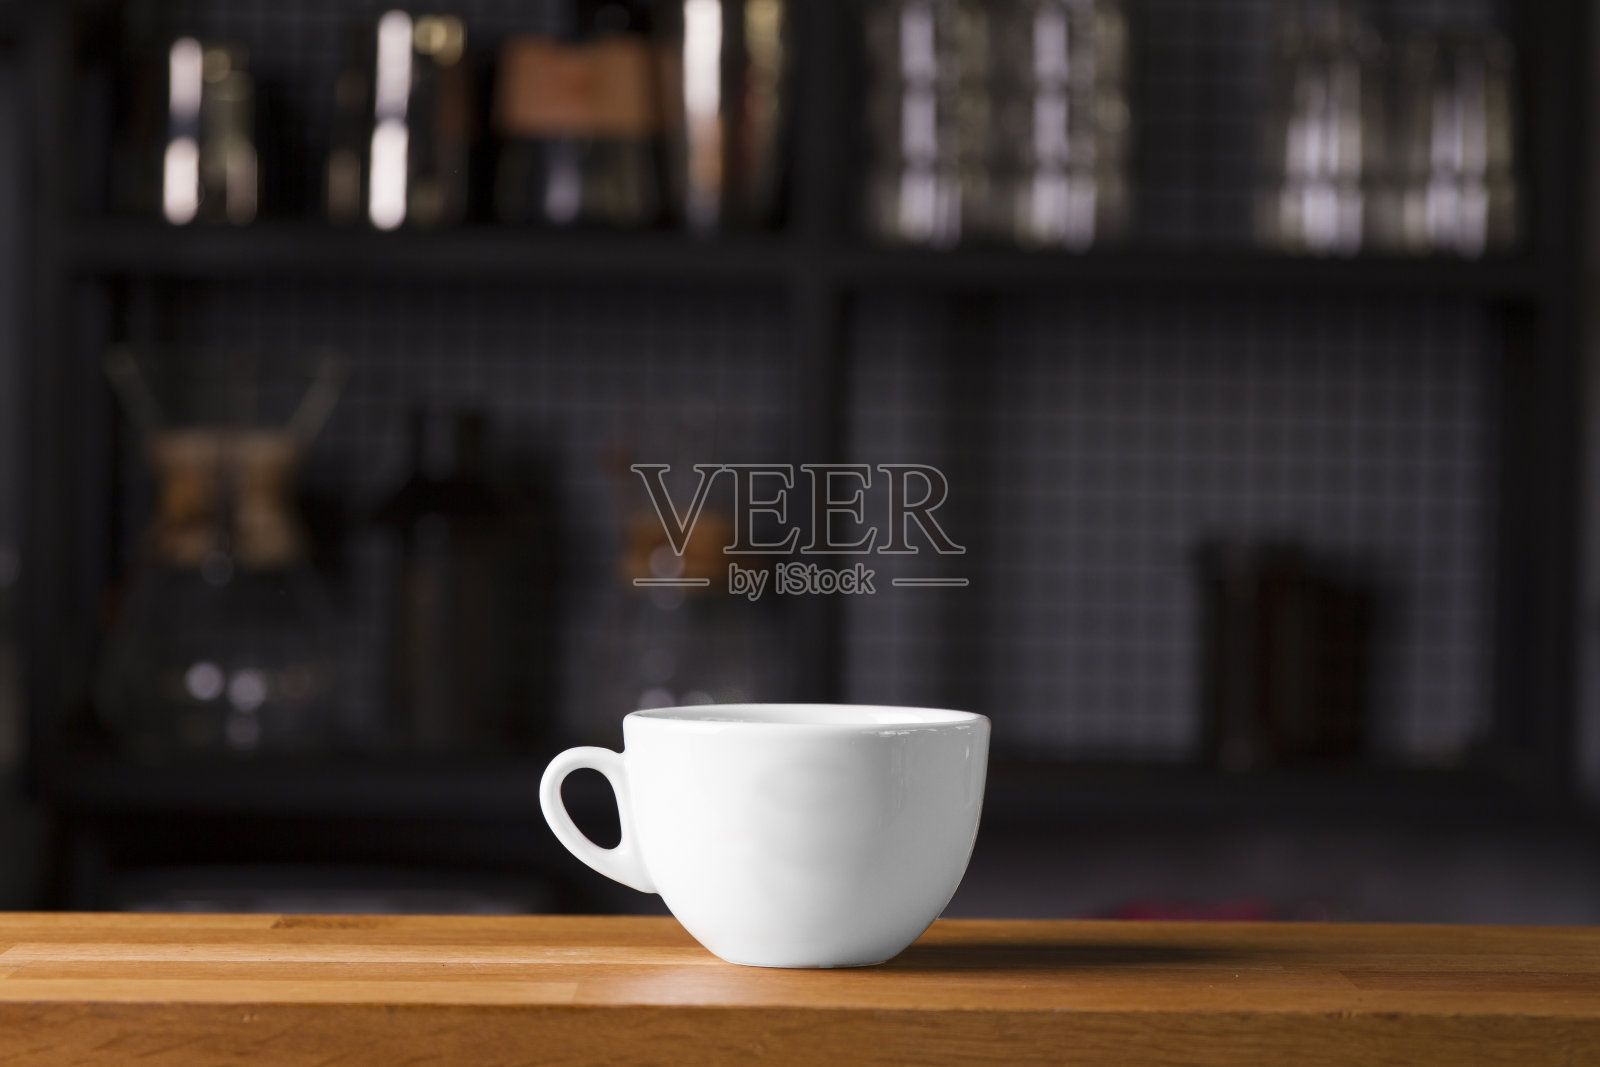 咖啡杯模拟模板标志设计展示照片摄影图片